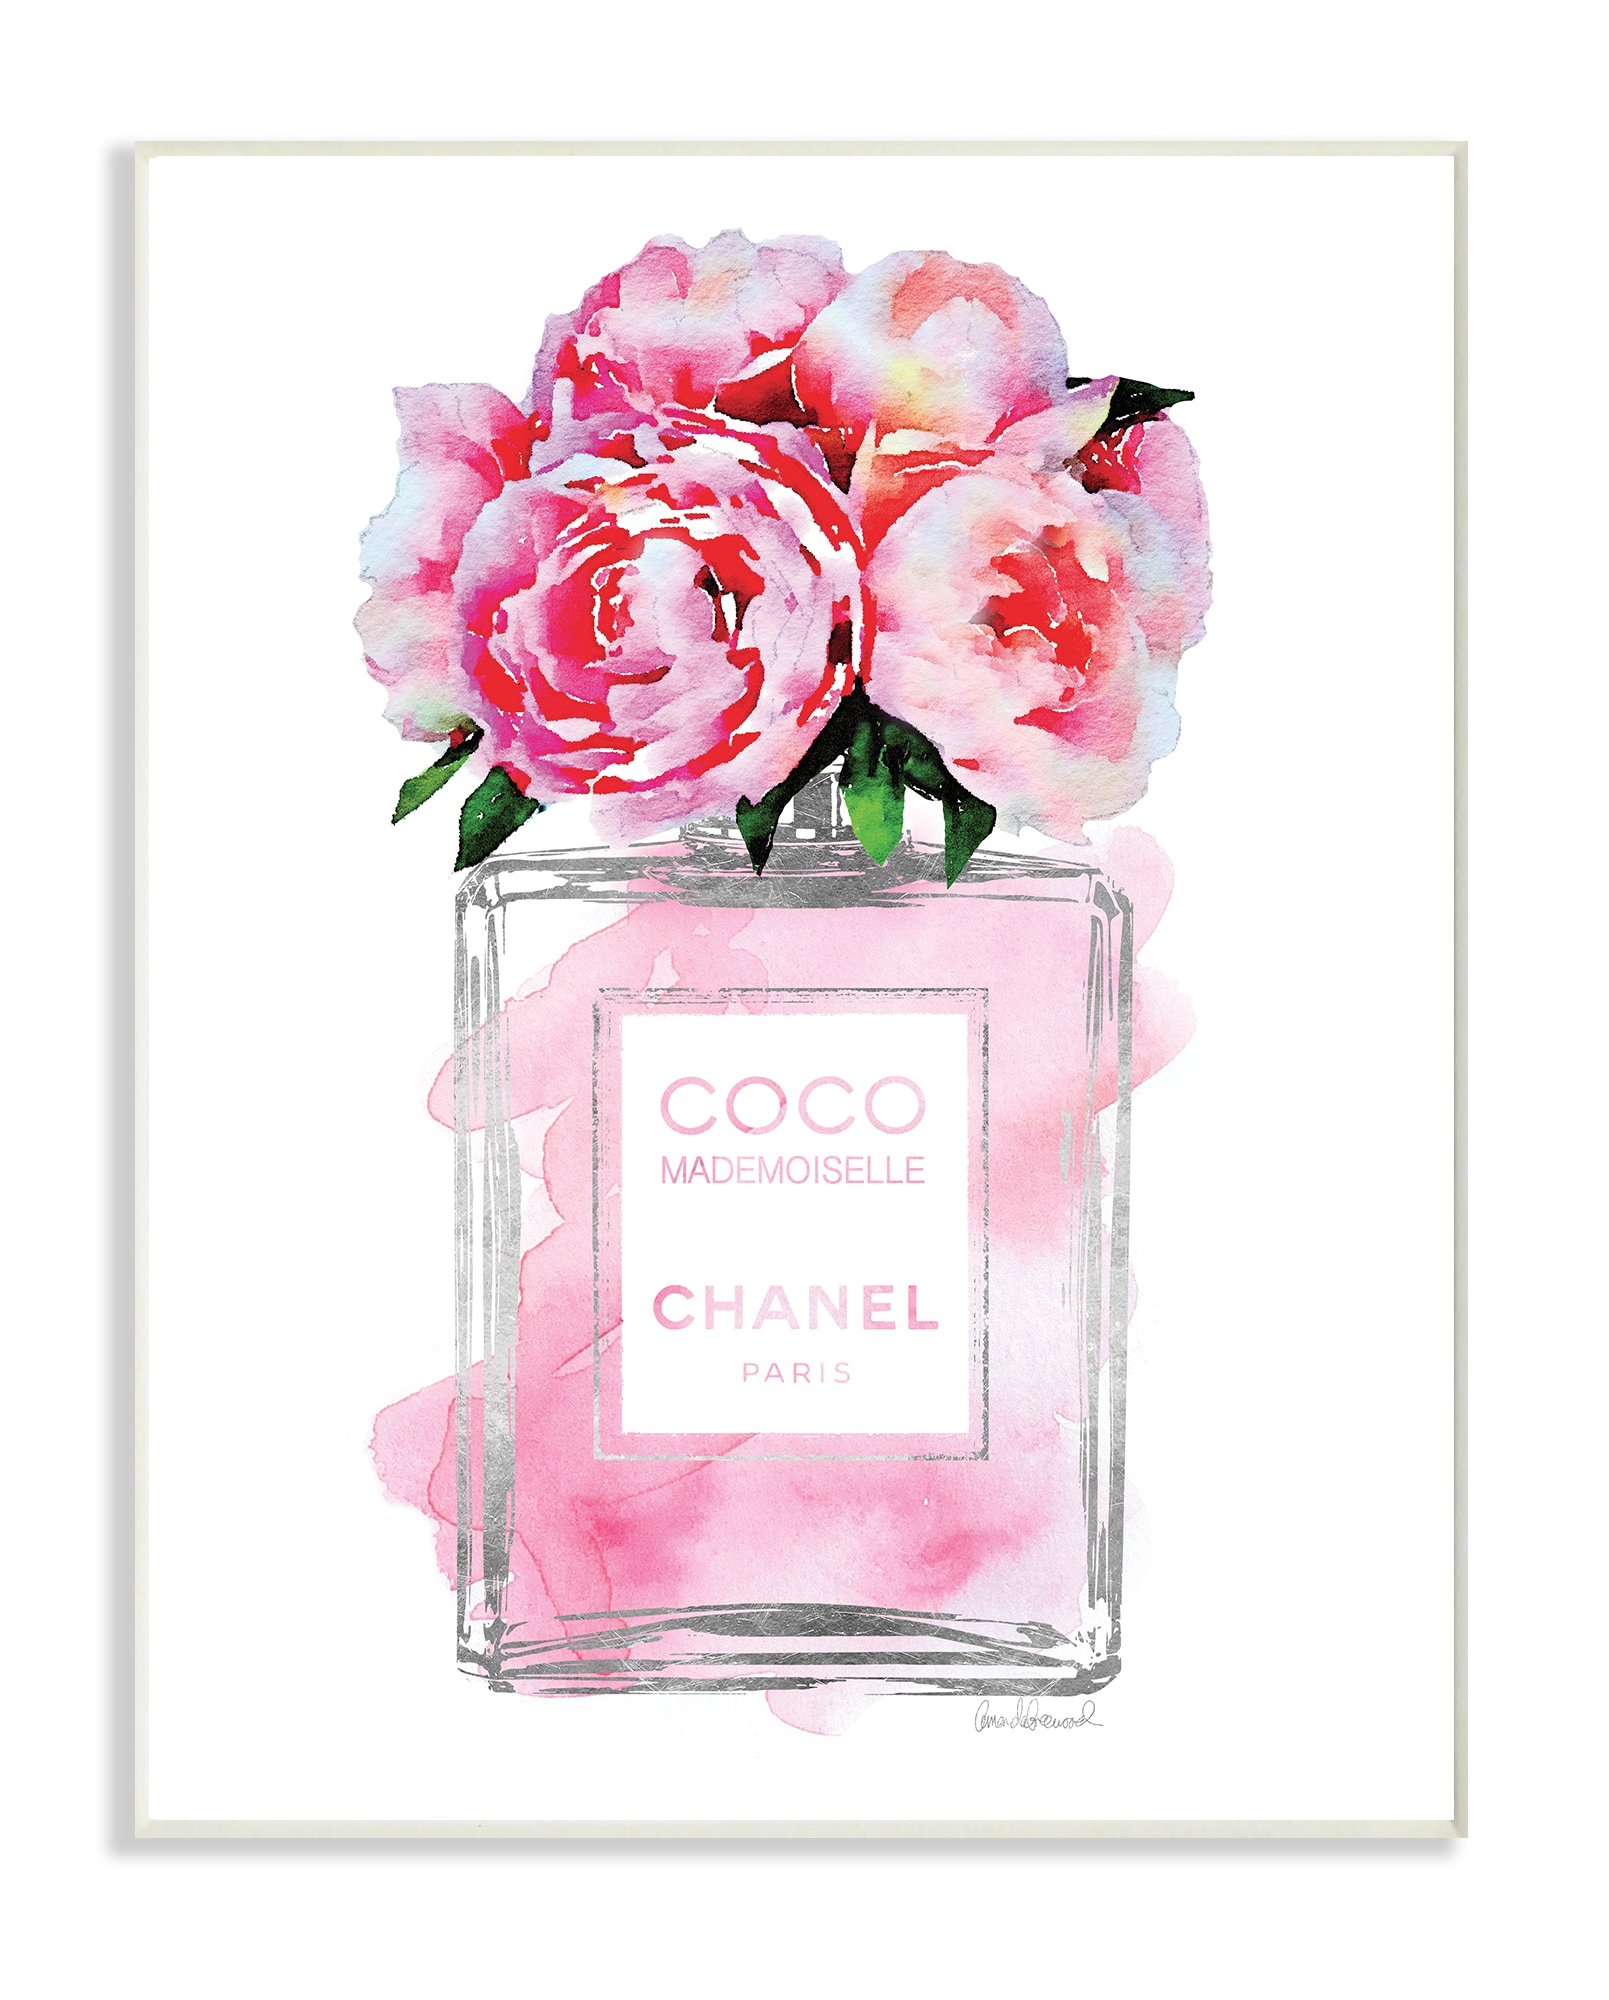 Chanel Flowers Modern Fashion Glam Wall Art